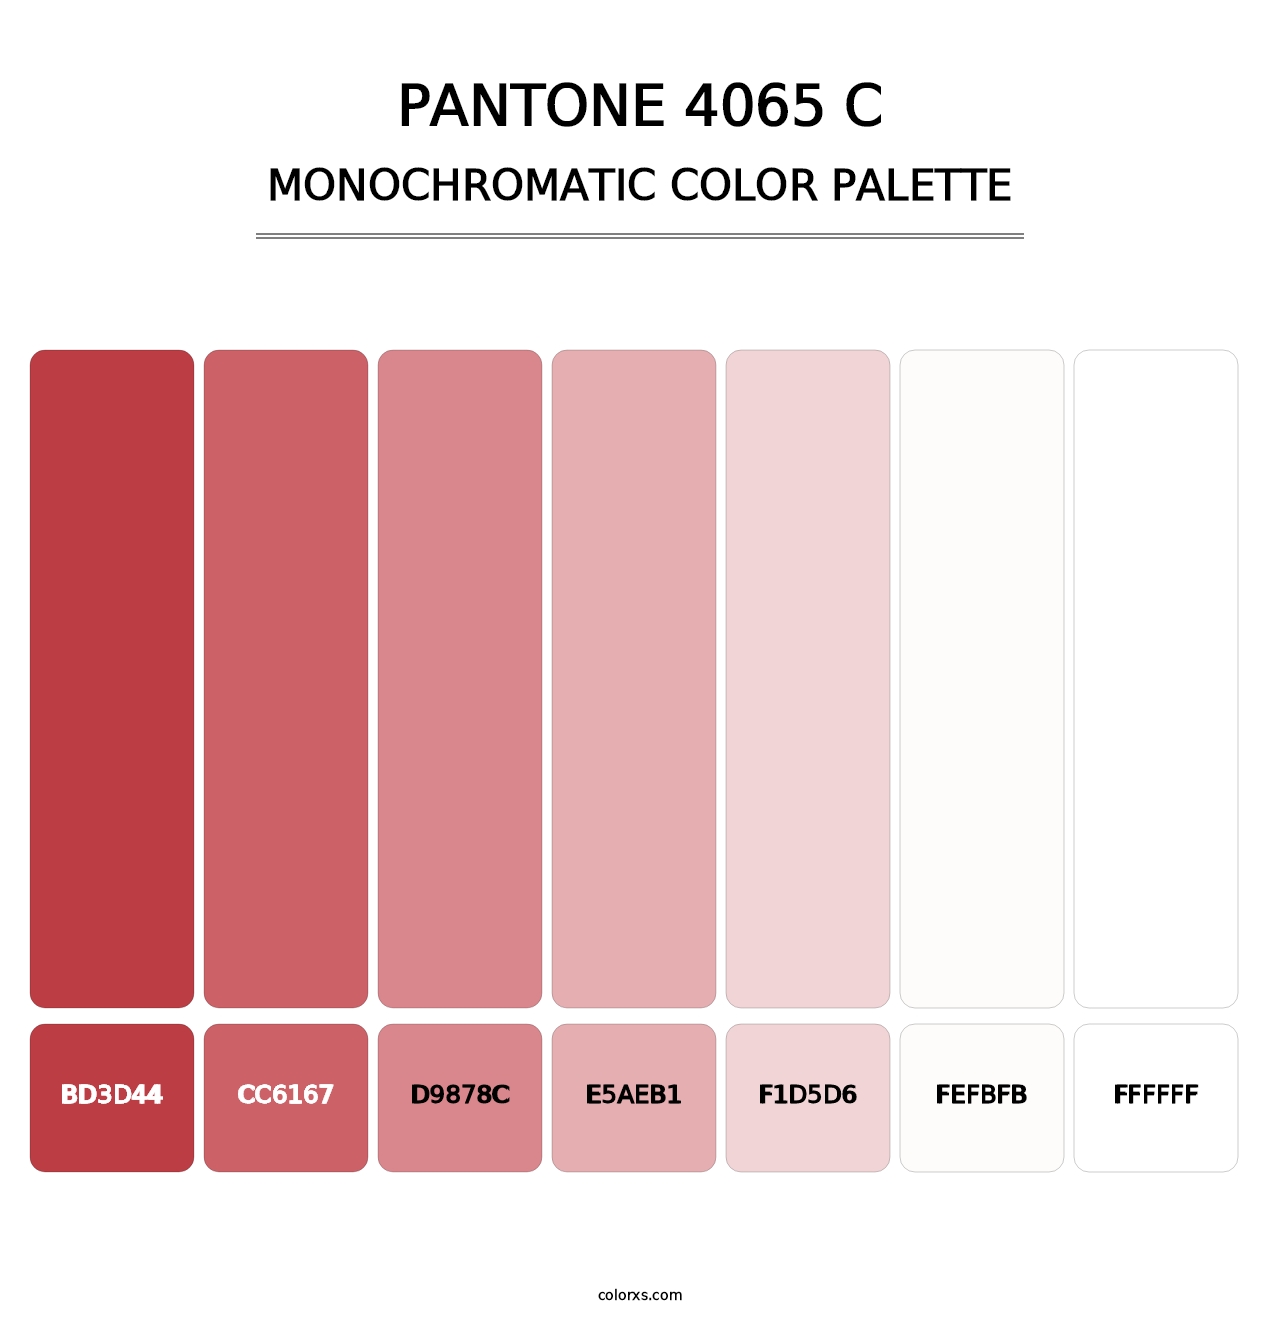 PANTONE 4065 C - Monochromatic Color Palette